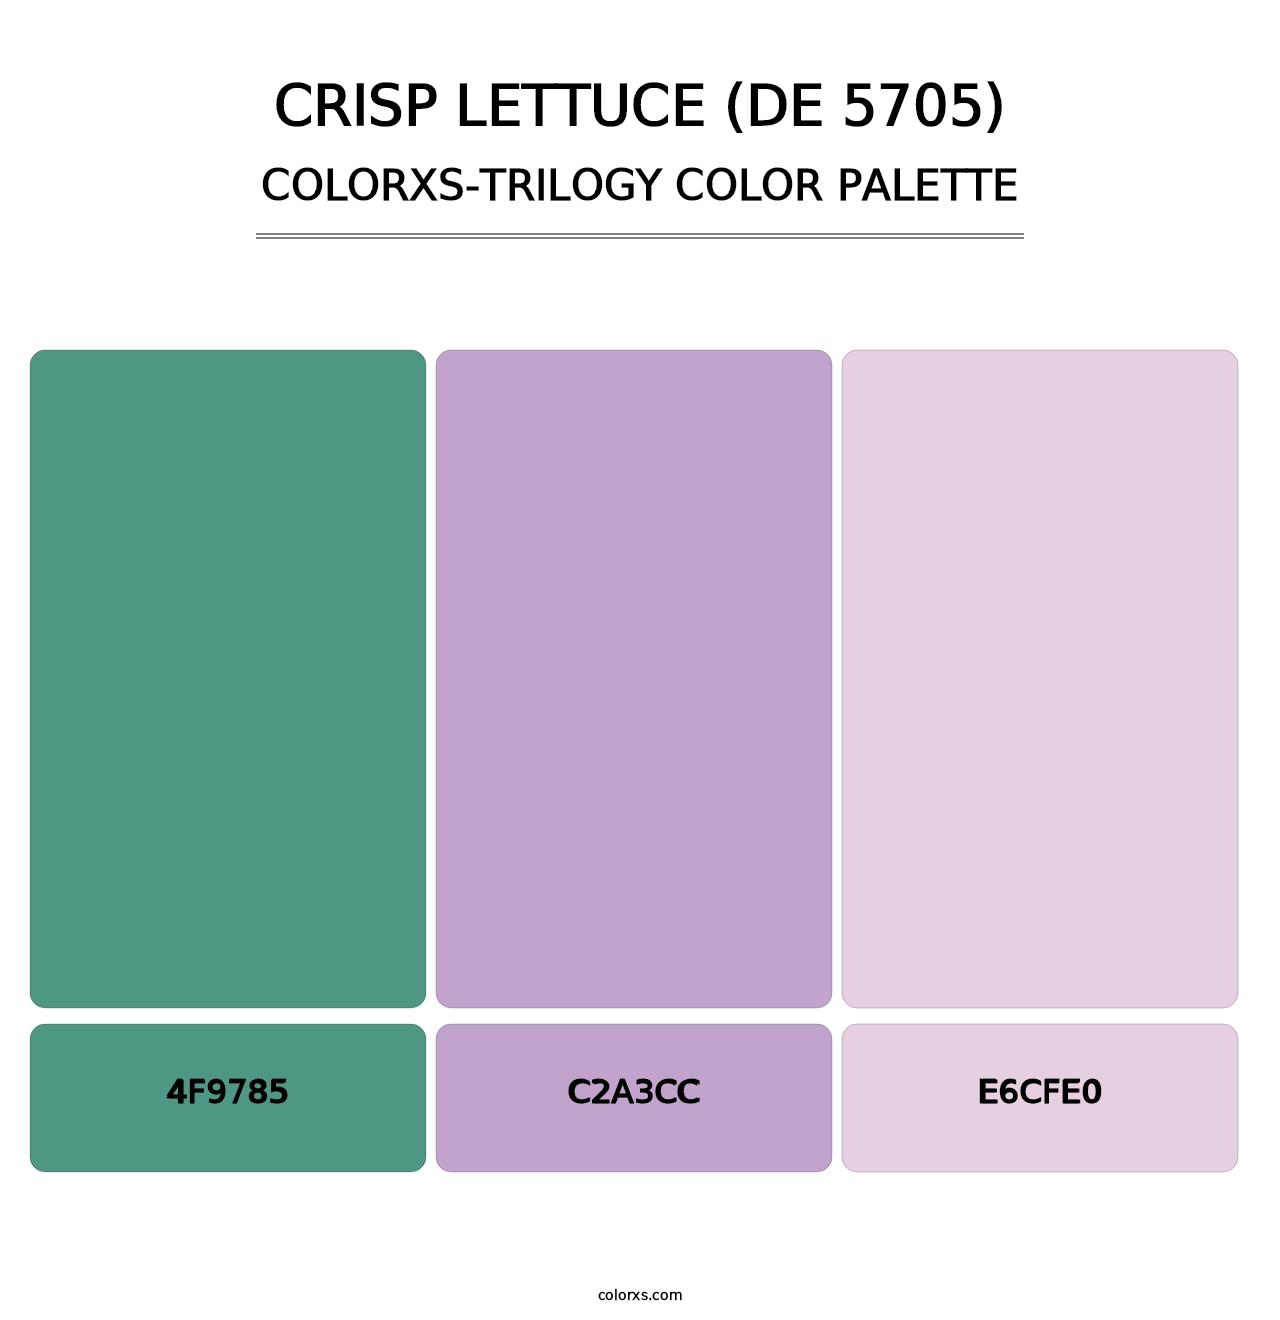 Crisp Lettuce (DE 5705) - Colorxs Trilogy Palette